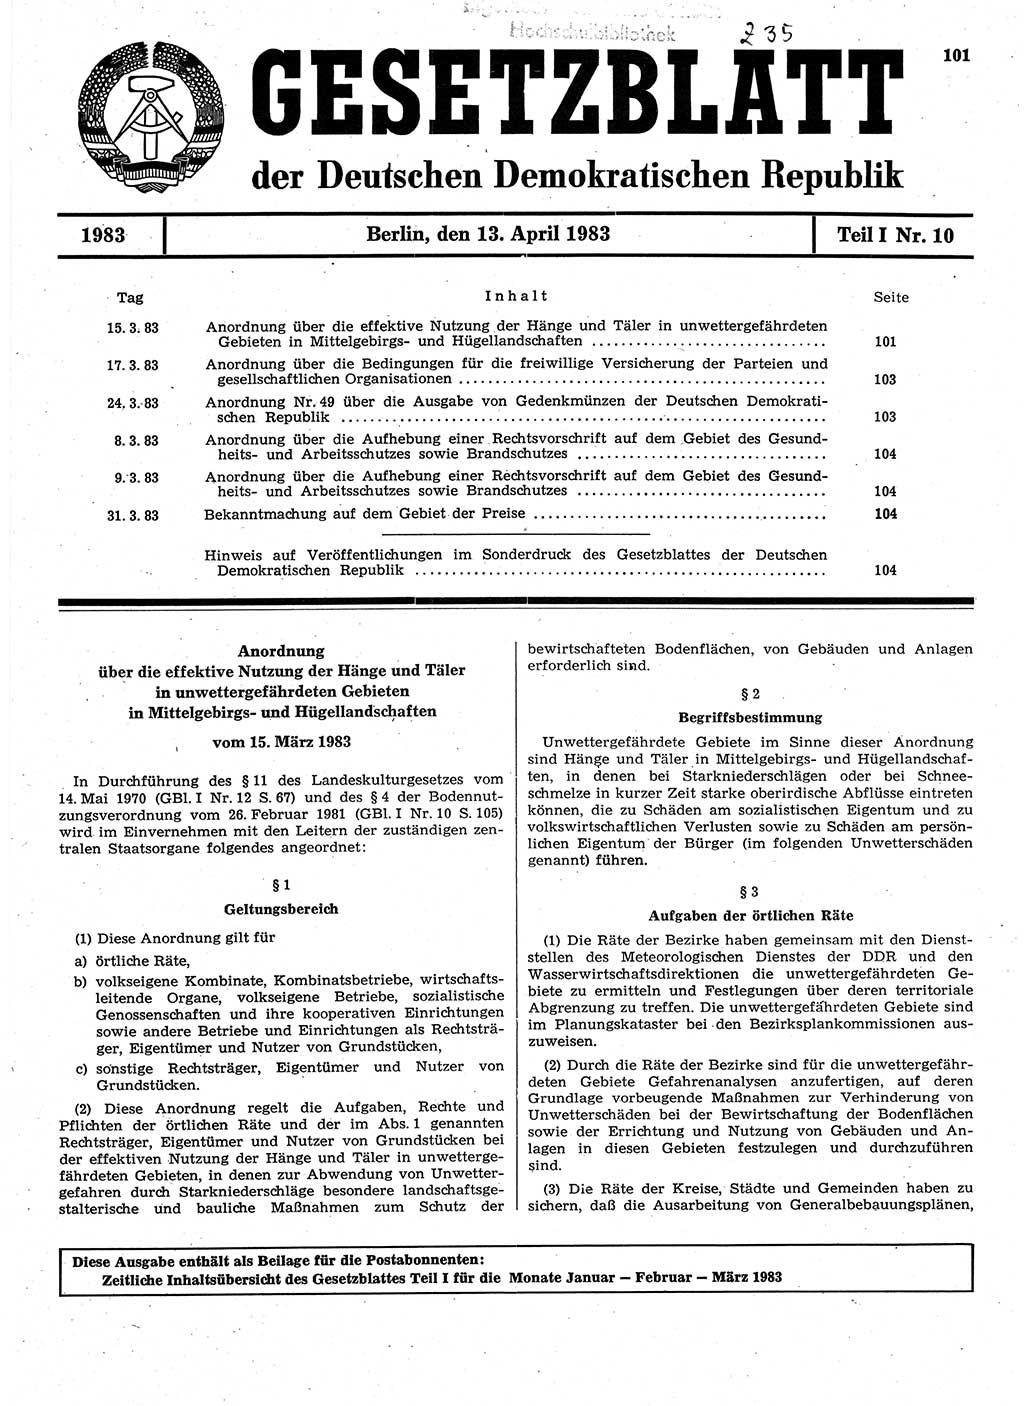 Gesetzblatt (GBl.) der Deutschen Demokratischen Republik (DDR) Teil Ⅰ 1983, Seite 101 (GBl. DDR Ⅰ 1983, S. 101)